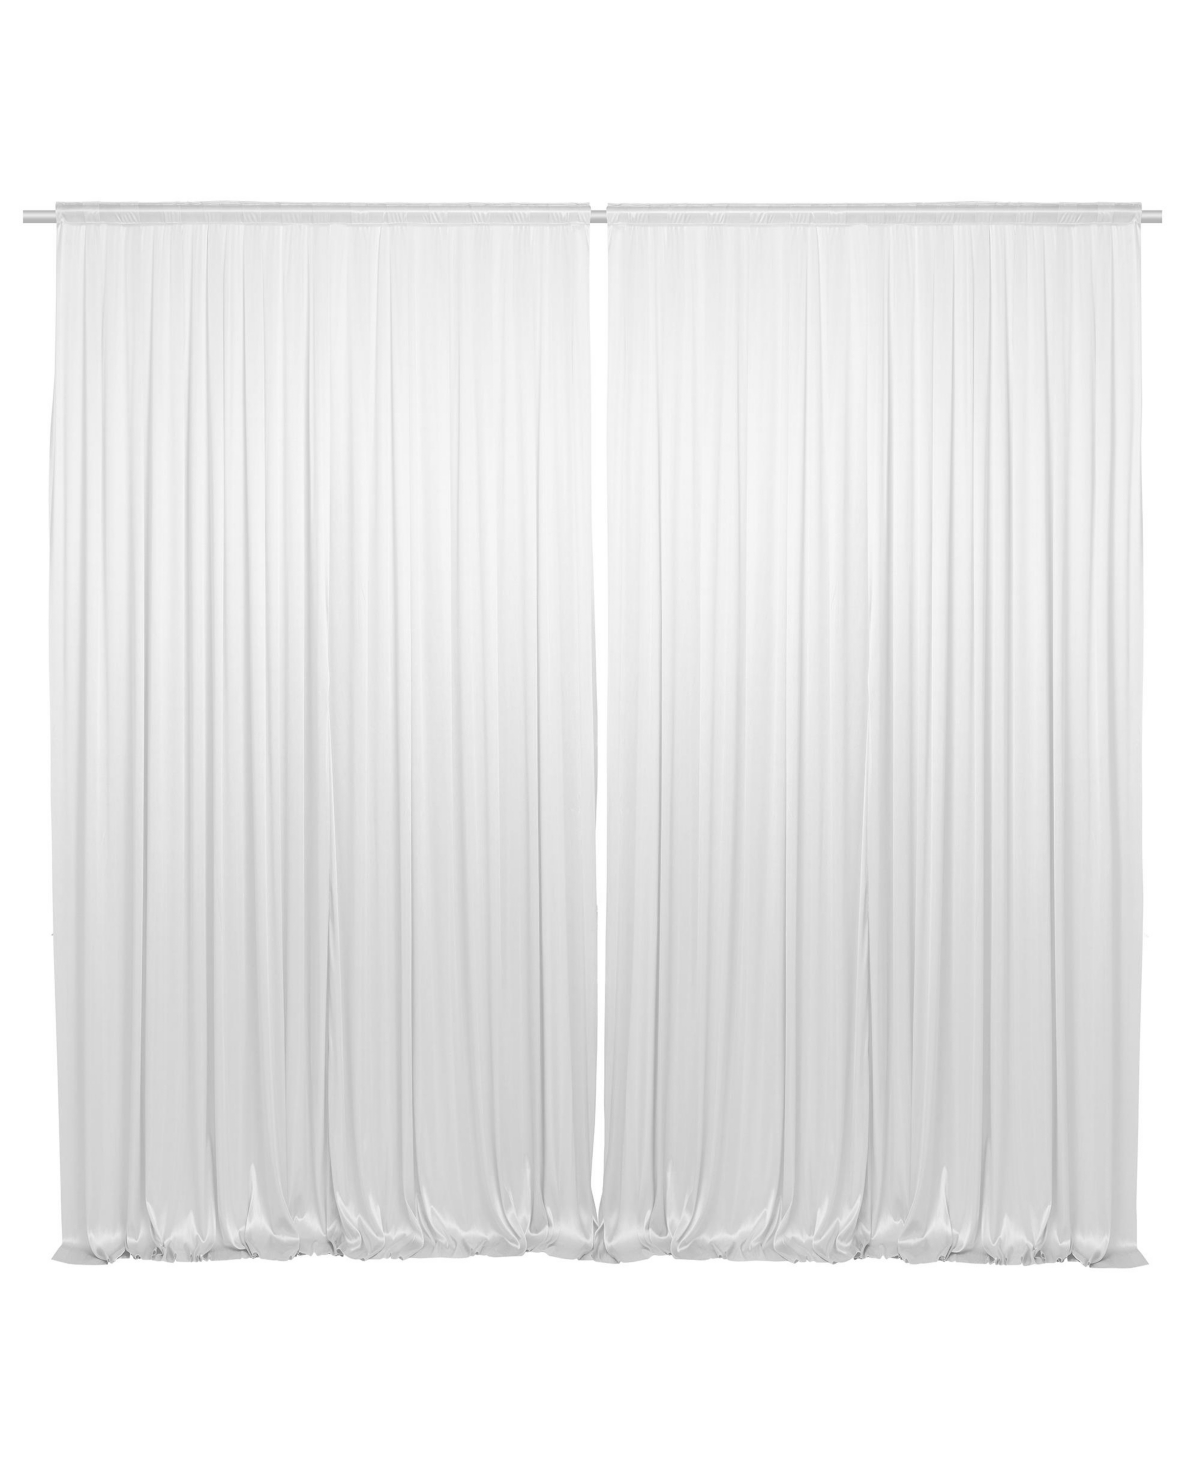 Set of 2 Photography Backdrop Curtains, 5ft x 10ft White Wedding Photo Background - White